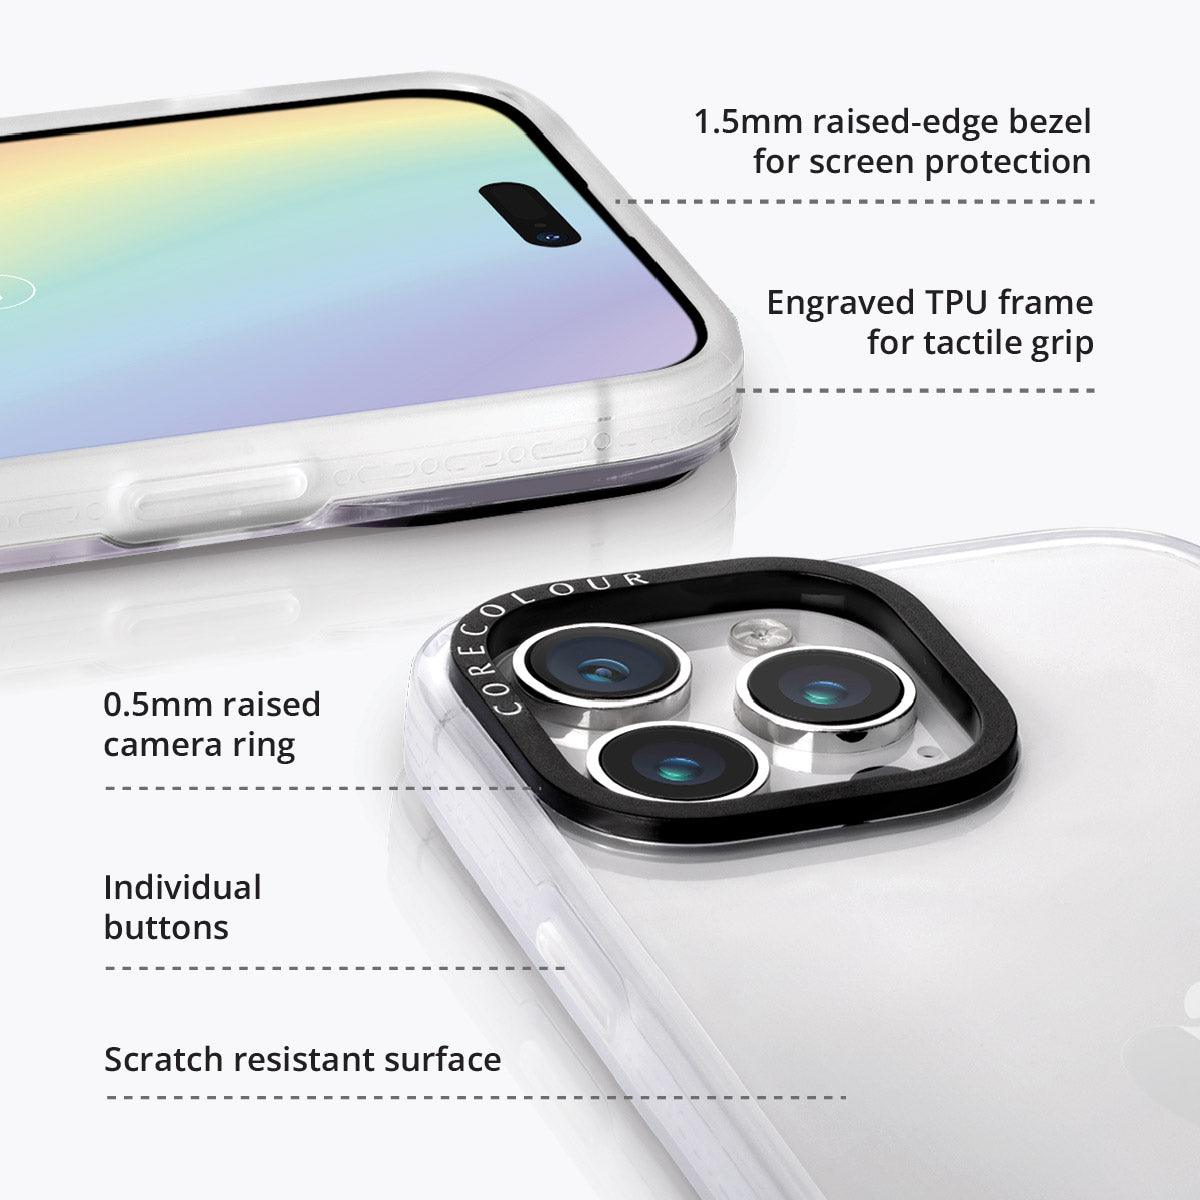 iPhone 15 Pro Mosaic Confetti Phone Case - CORECOLOUR